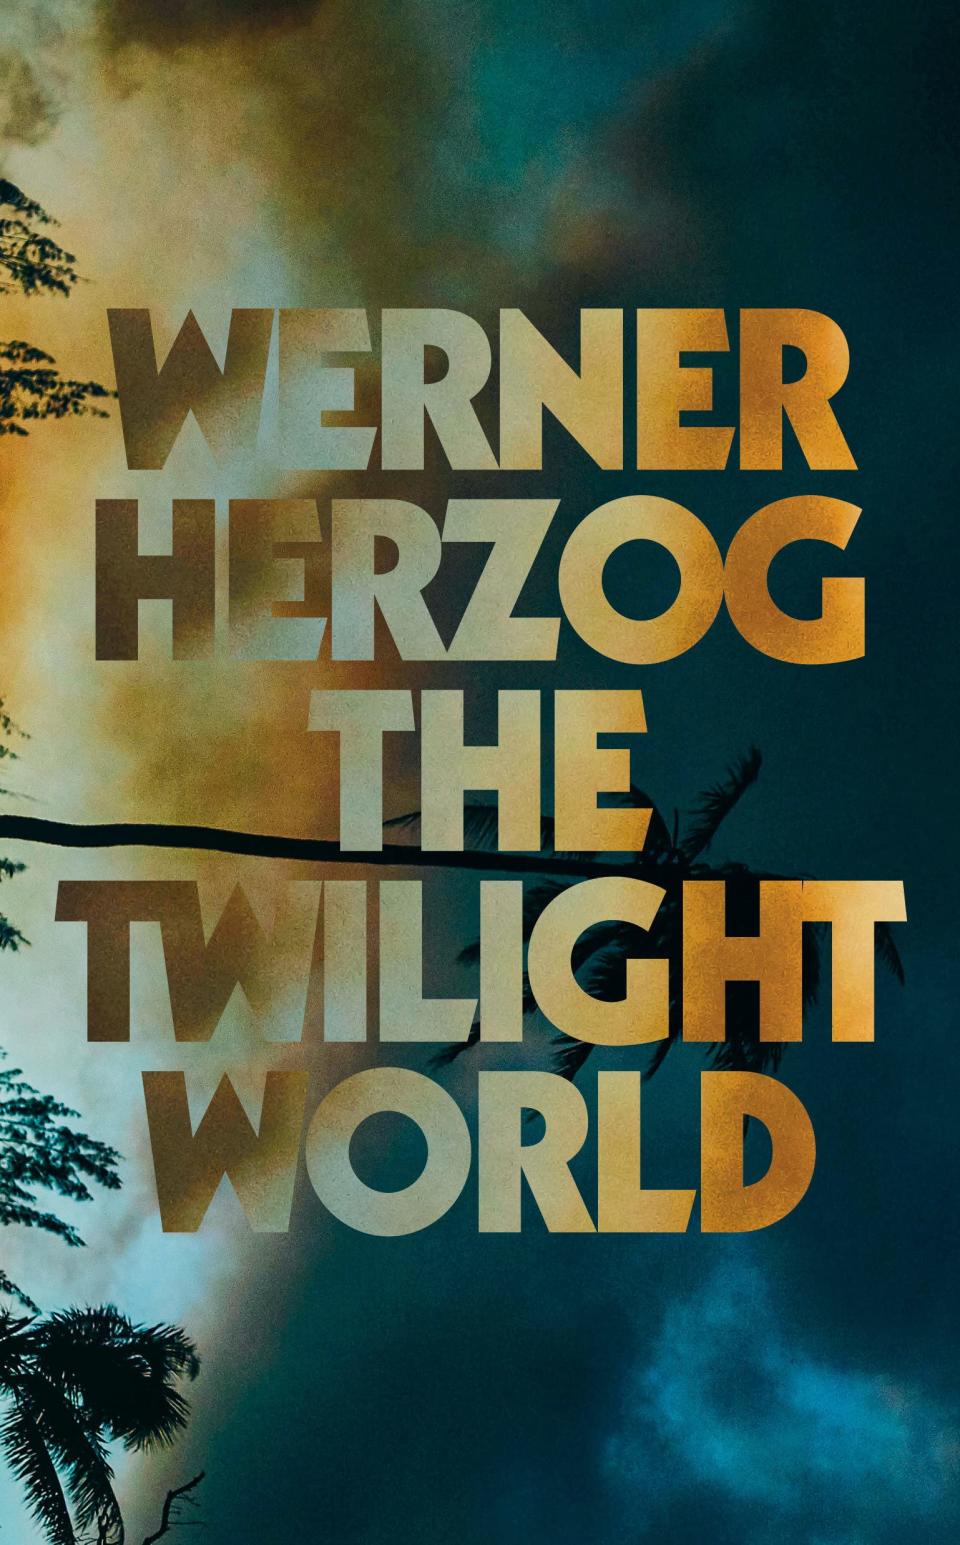 "The Twilight World," by Werner Herzog.